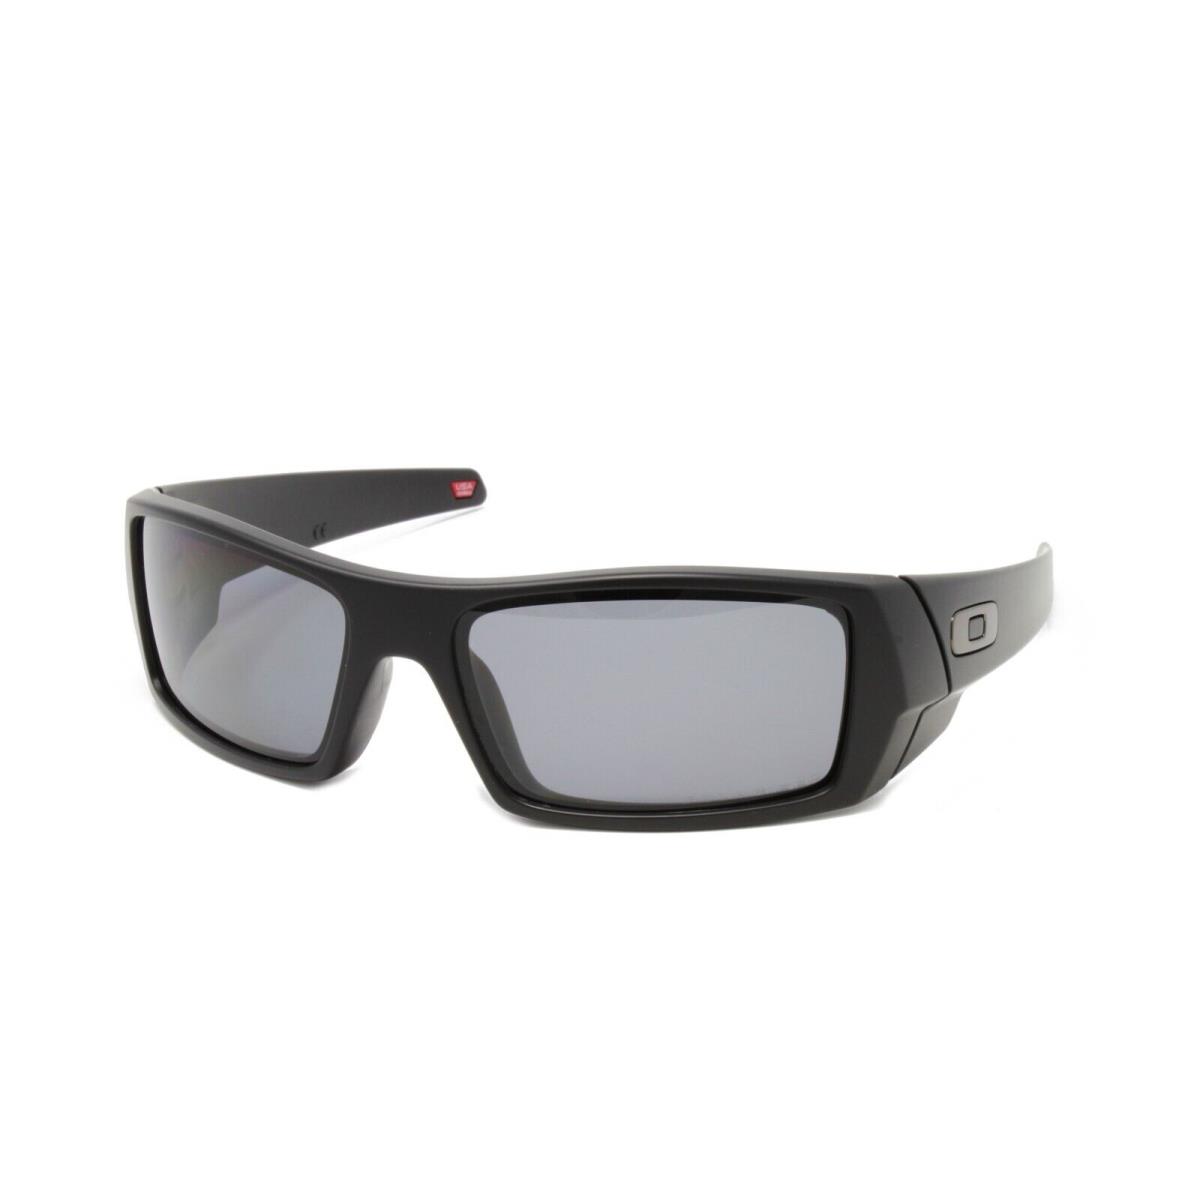 Oakley Sunglasses OO9014 11-122 Gascan Matte Black Polarized Lens 61mm - Black Frame, Gray Lens